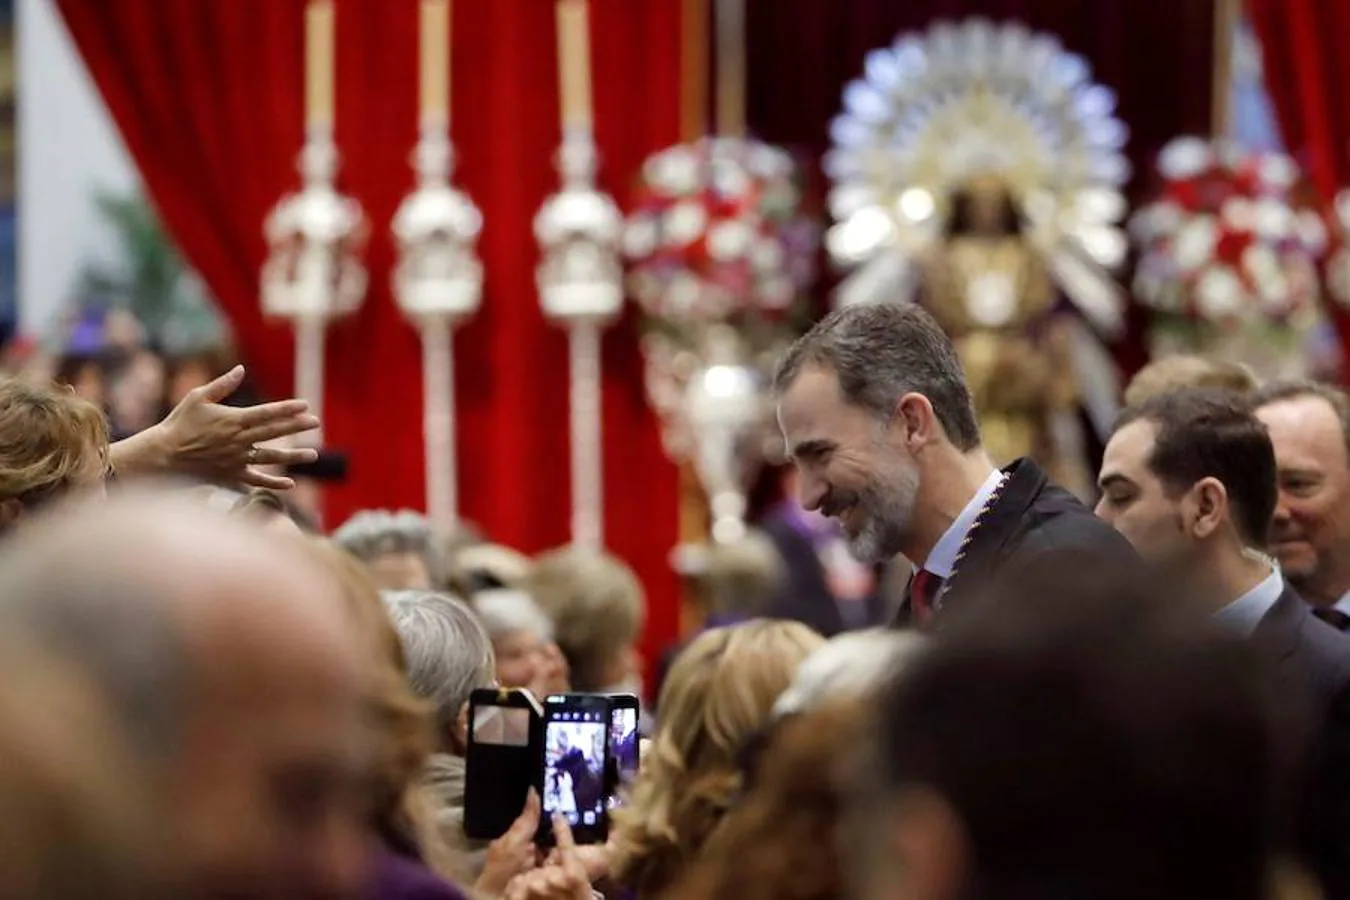 La visita de Don Felipe a la Basílica de Jesús de Medinaceli en Madrid, en imágenes. Don Felipe ha saludado a los fieles congregados entorno a la Basílica madrileña